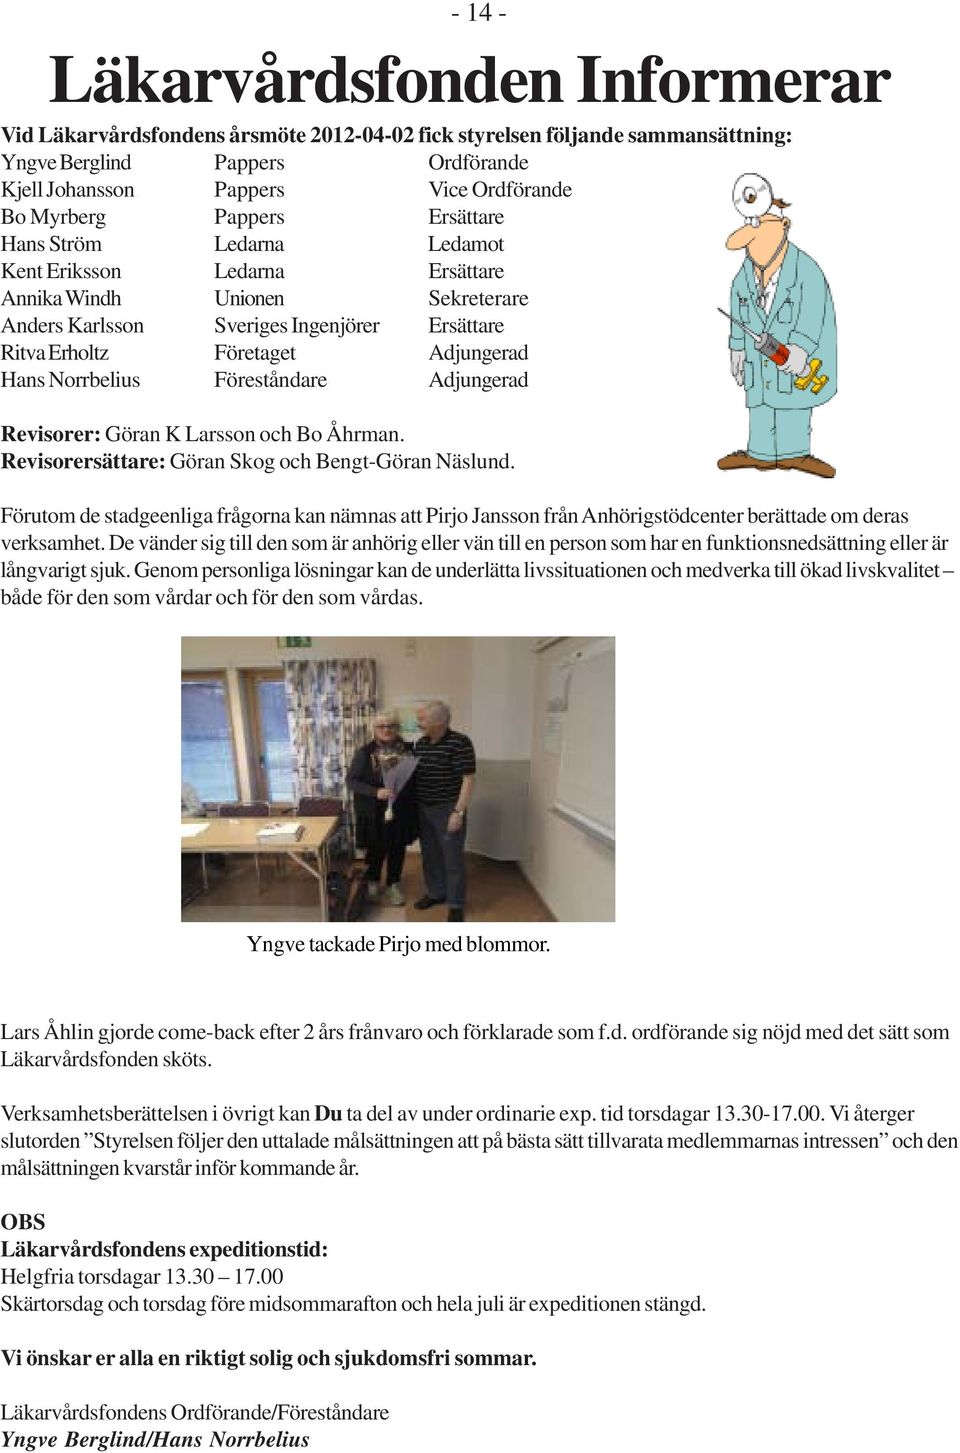 Hans Norrbelius Föreståndare Adjungerad Revisorer: Göran K Larsson och Bo Åhrman. Revisorersättare: Göran Skog och Bengt-Göran Näslund.